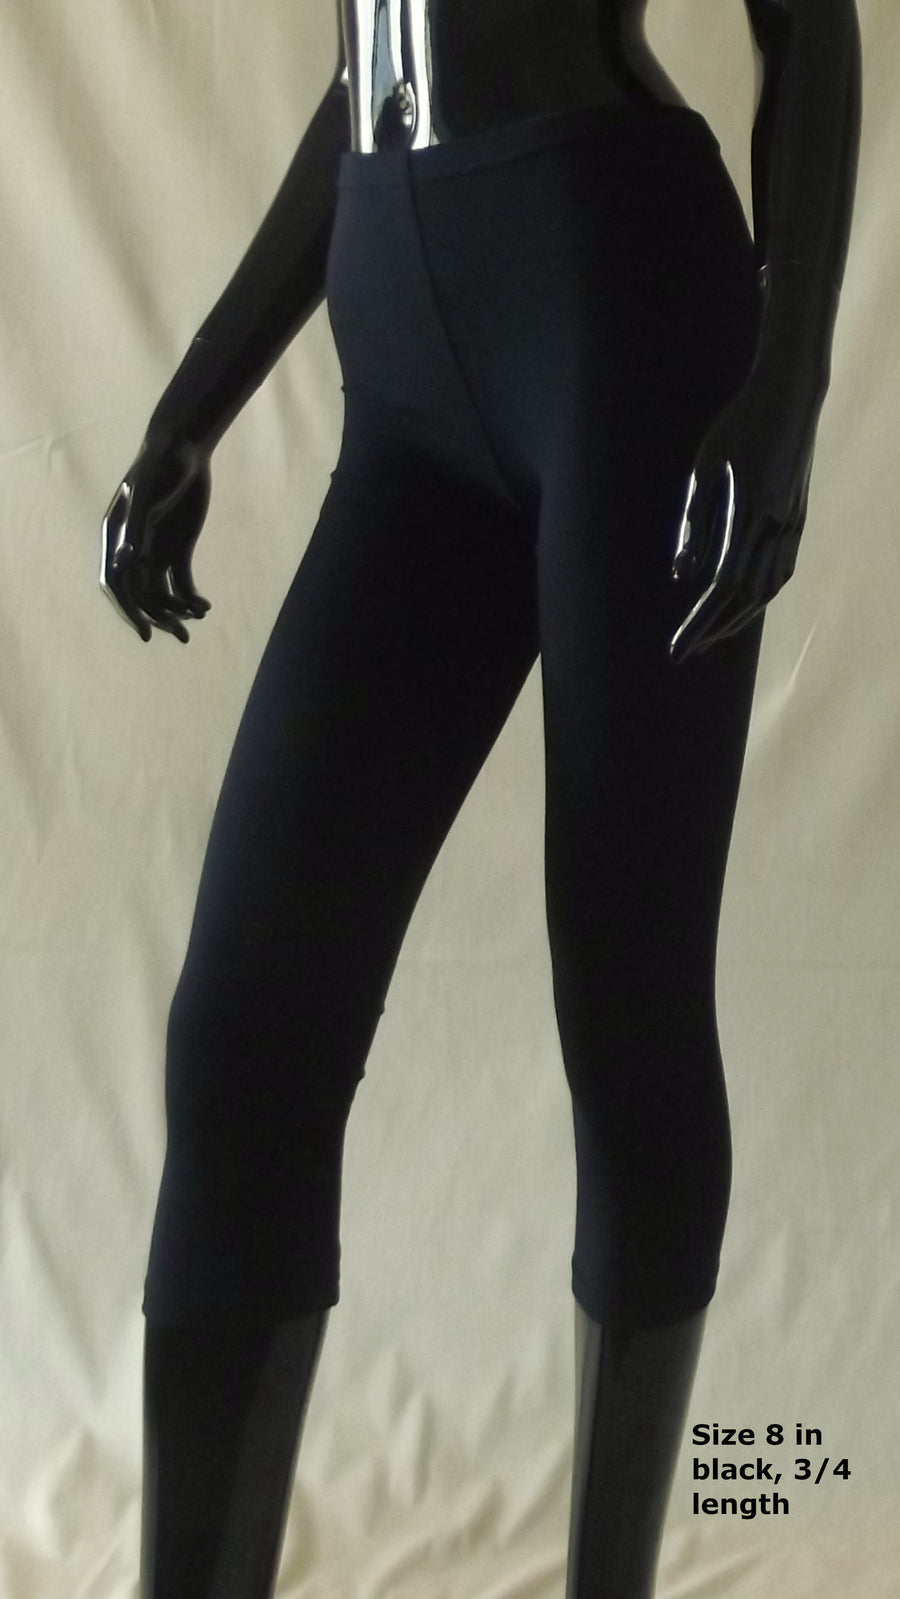 black 3/4 length ladies leggings